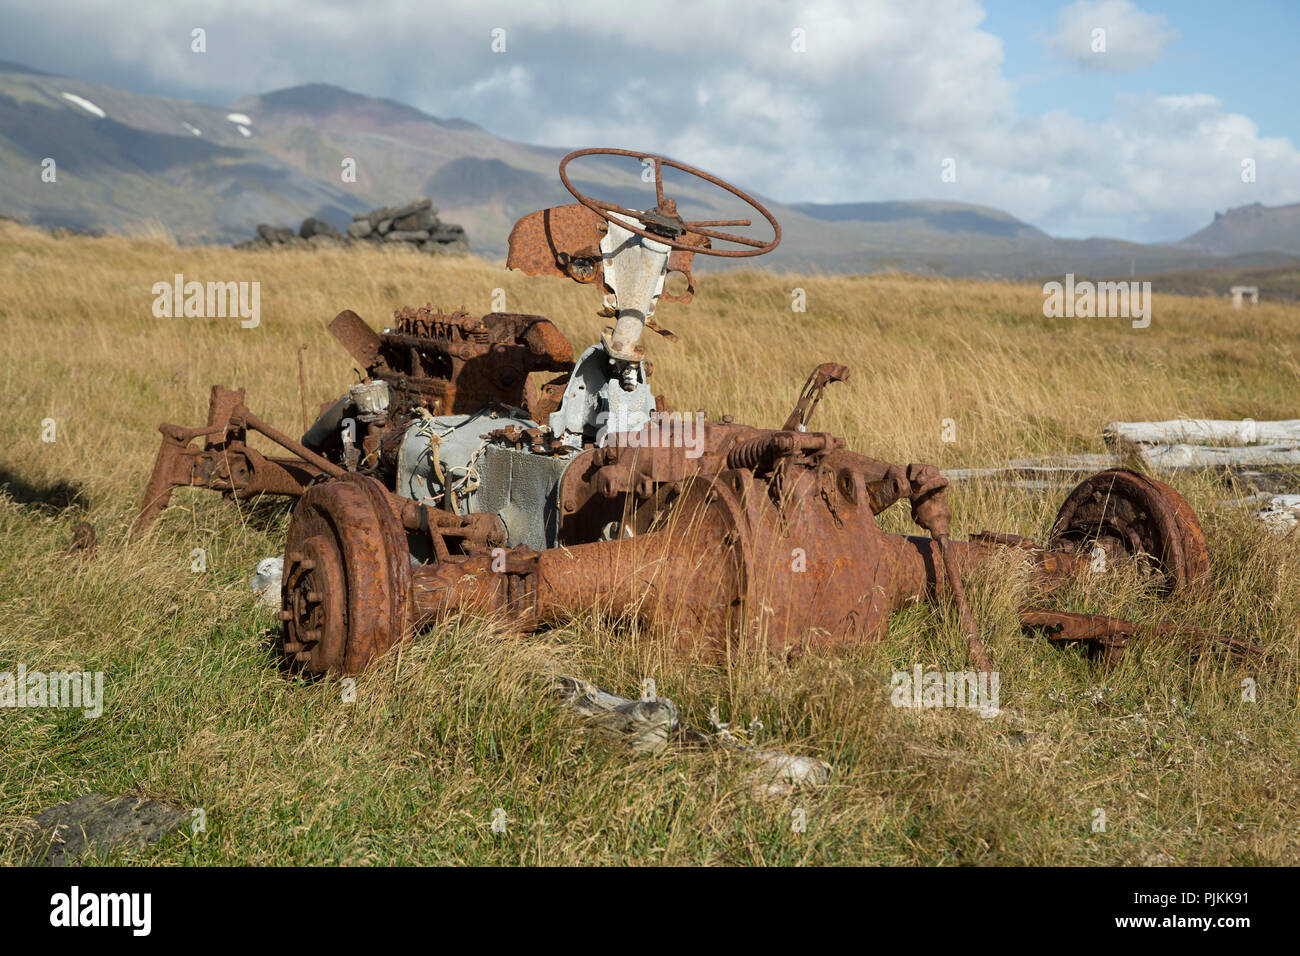 Islandia, el naufragio de un tractor en la hierba alta, oxidados, sin los neumáticos, el estado de ánimo de verano Foto de stock